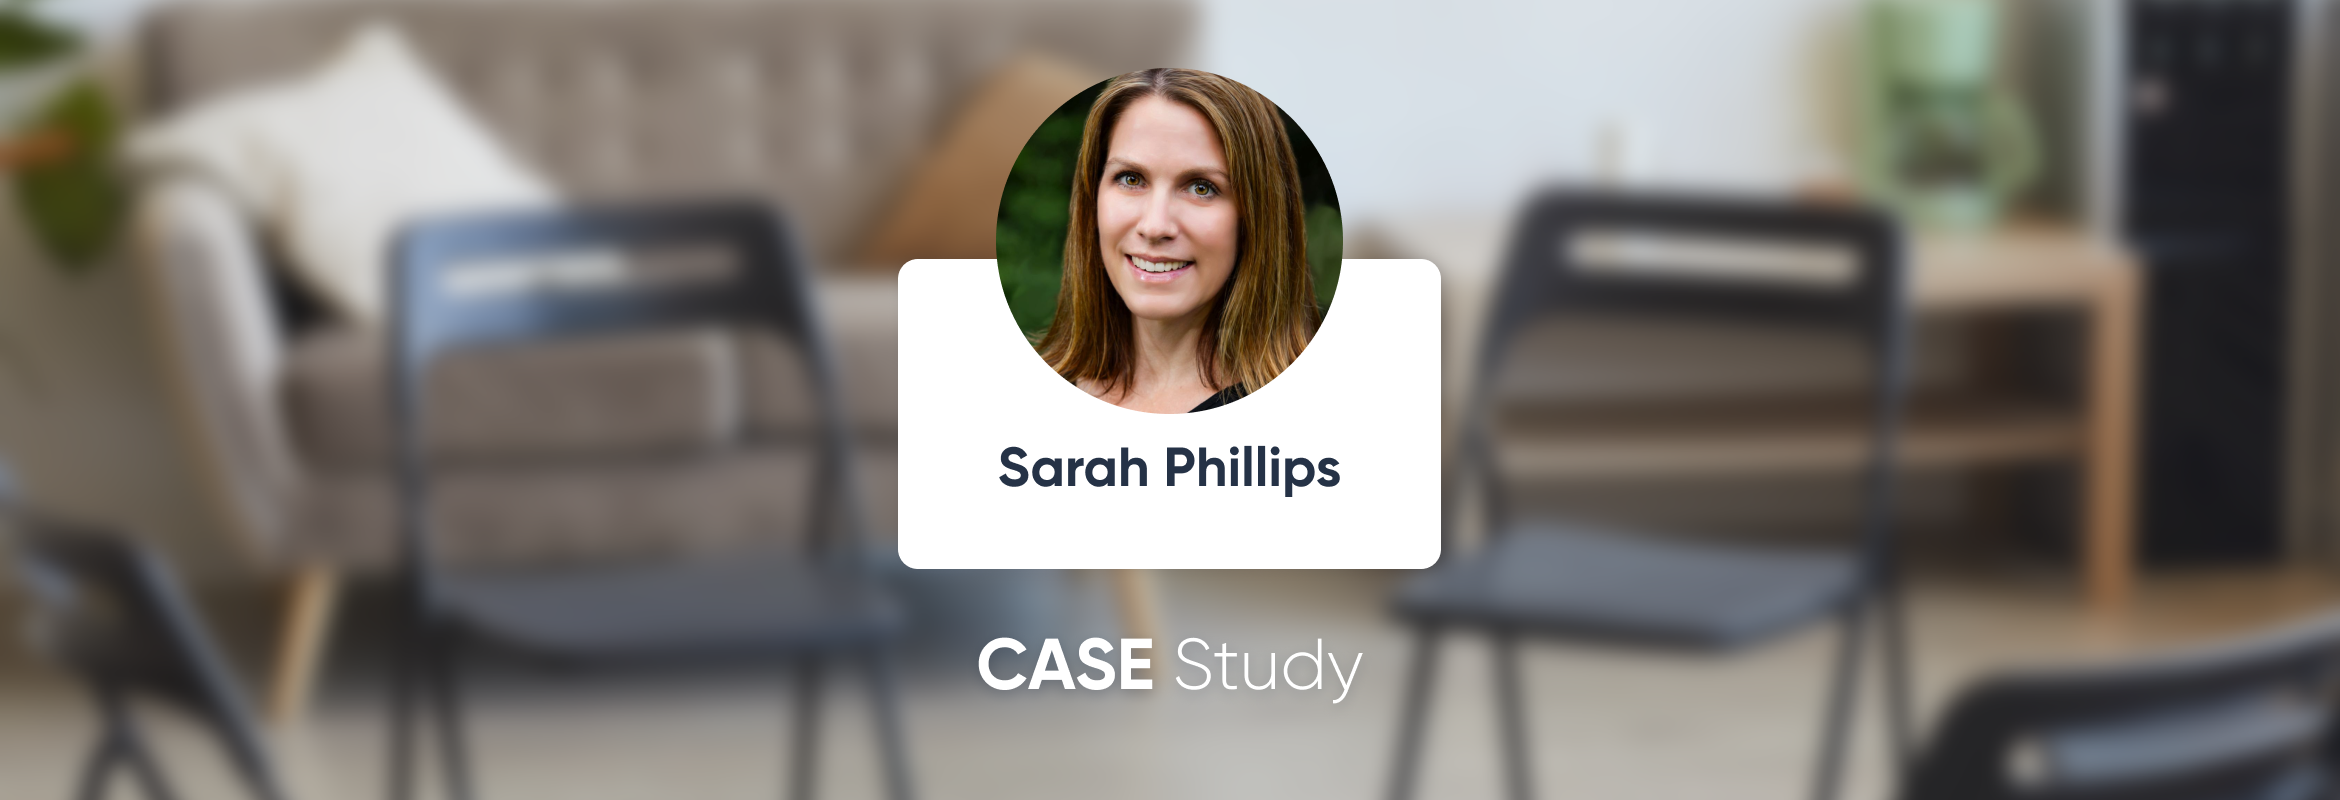 Sarah Phillips, LCSW - Estudio de caso